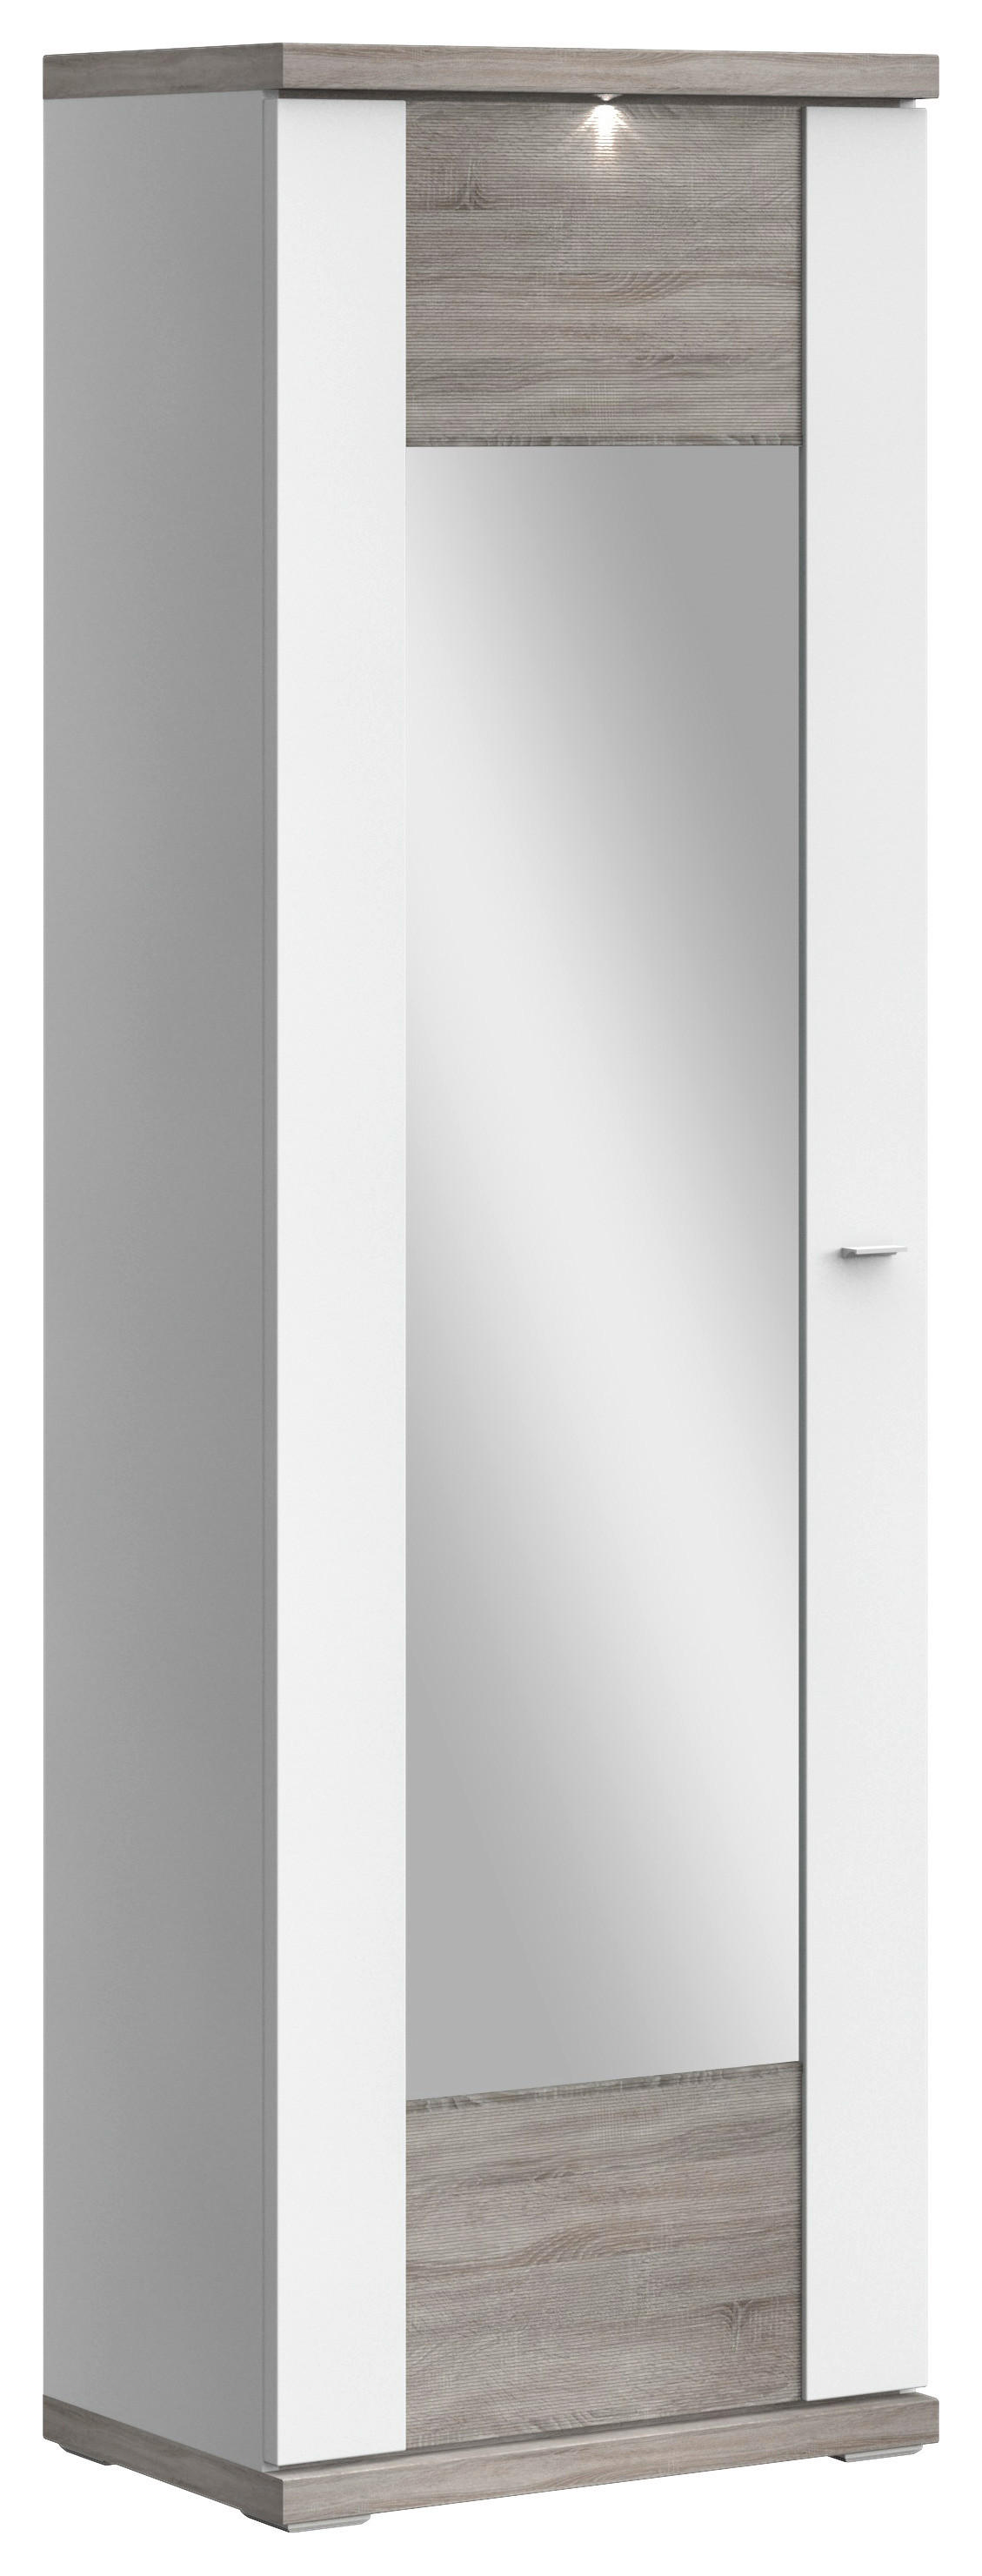 GARDEROBENSCHRANK Weiß, Eichefarben  - Chromfarben/Eichefarben, Design, Holzwerkstoff/Metall (65/206,6/41,6cm) - Xora